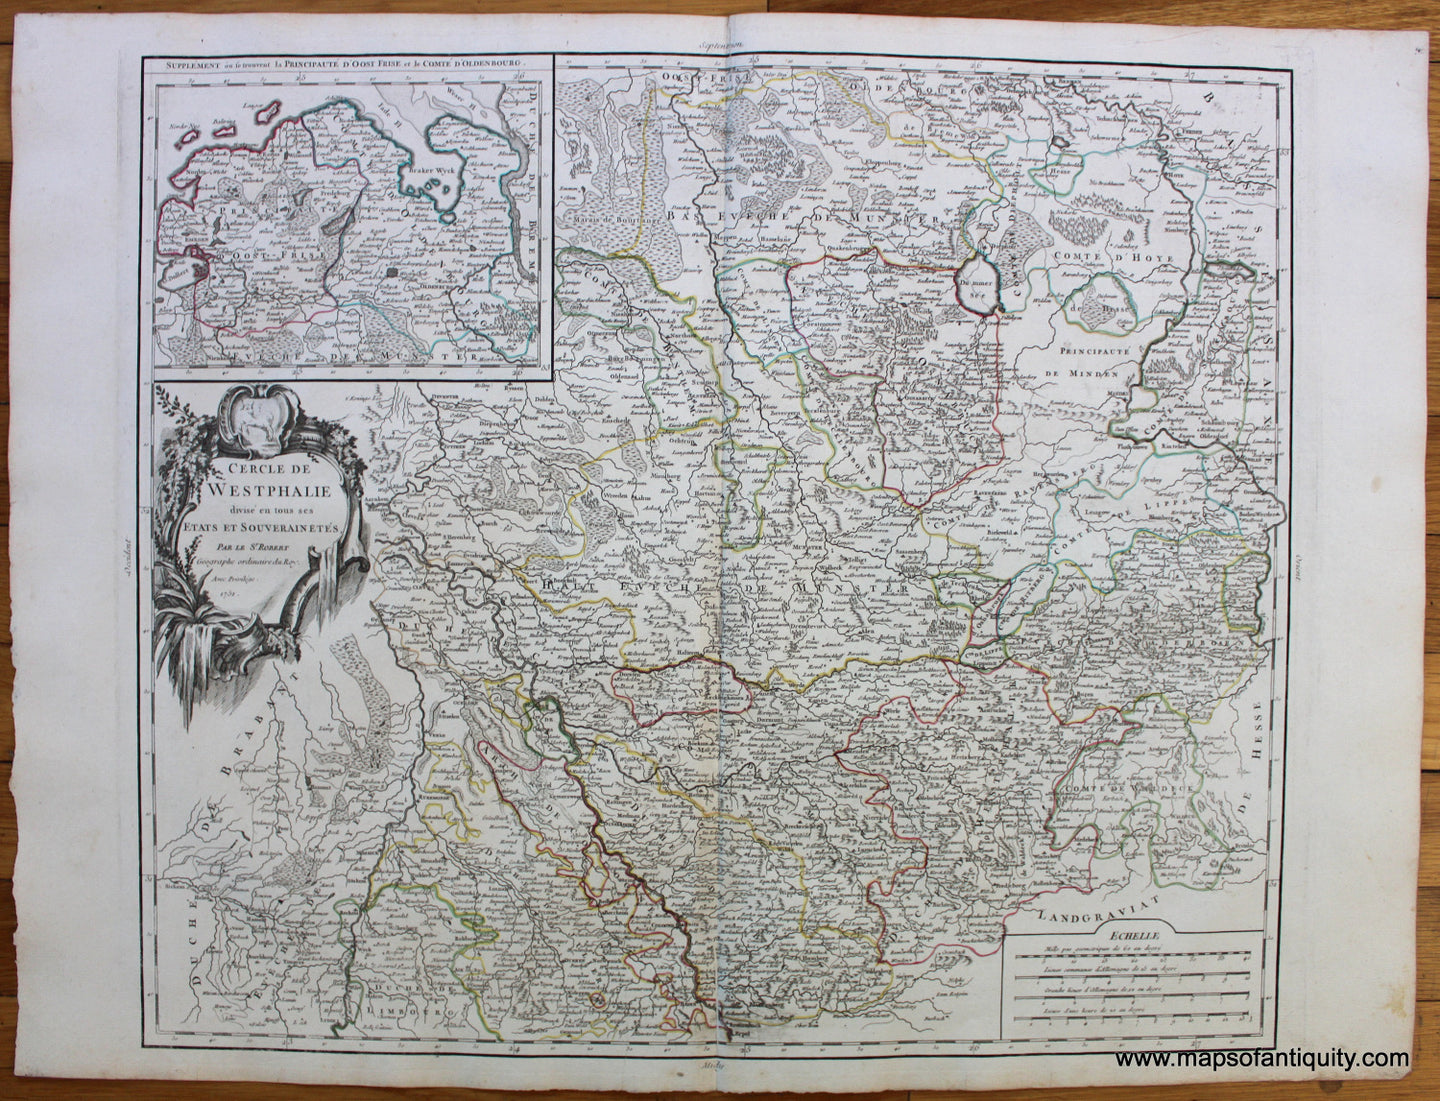 Antique-Hand-Colored-Map-Cercle-de-Westphalie-Europe--1757-Vaugondy-Maps-Of-Antiquity